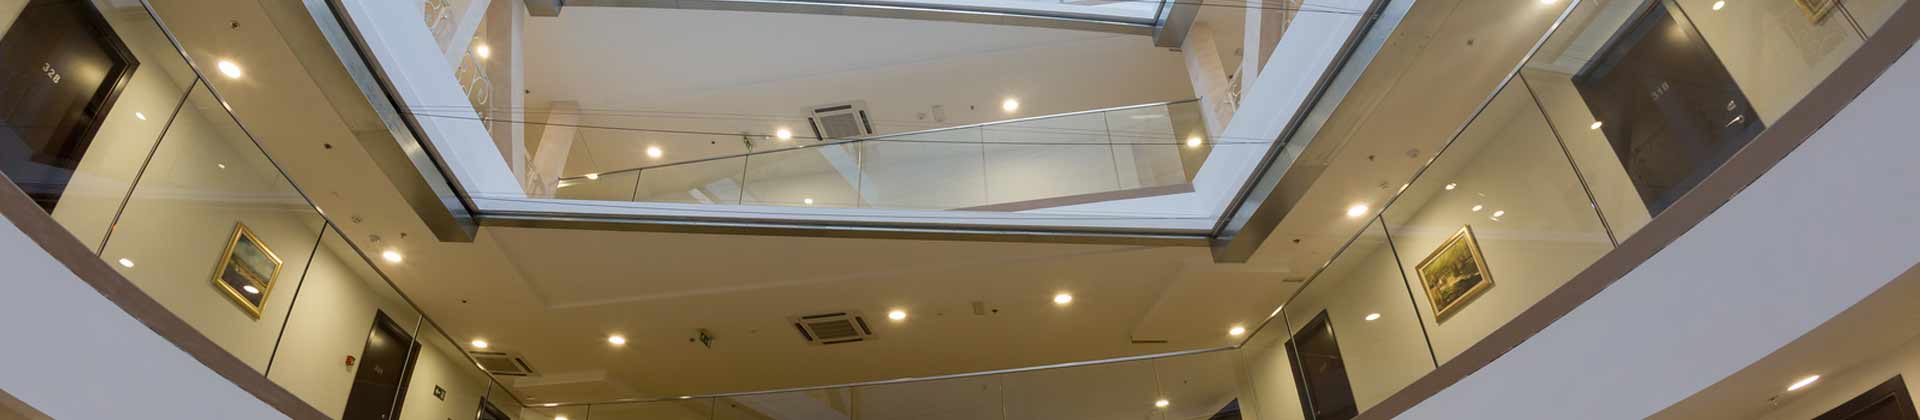 Fibershield®-H + HC: Cortina tagliafuoco orizzontale per aperture orizzontali a soffitto